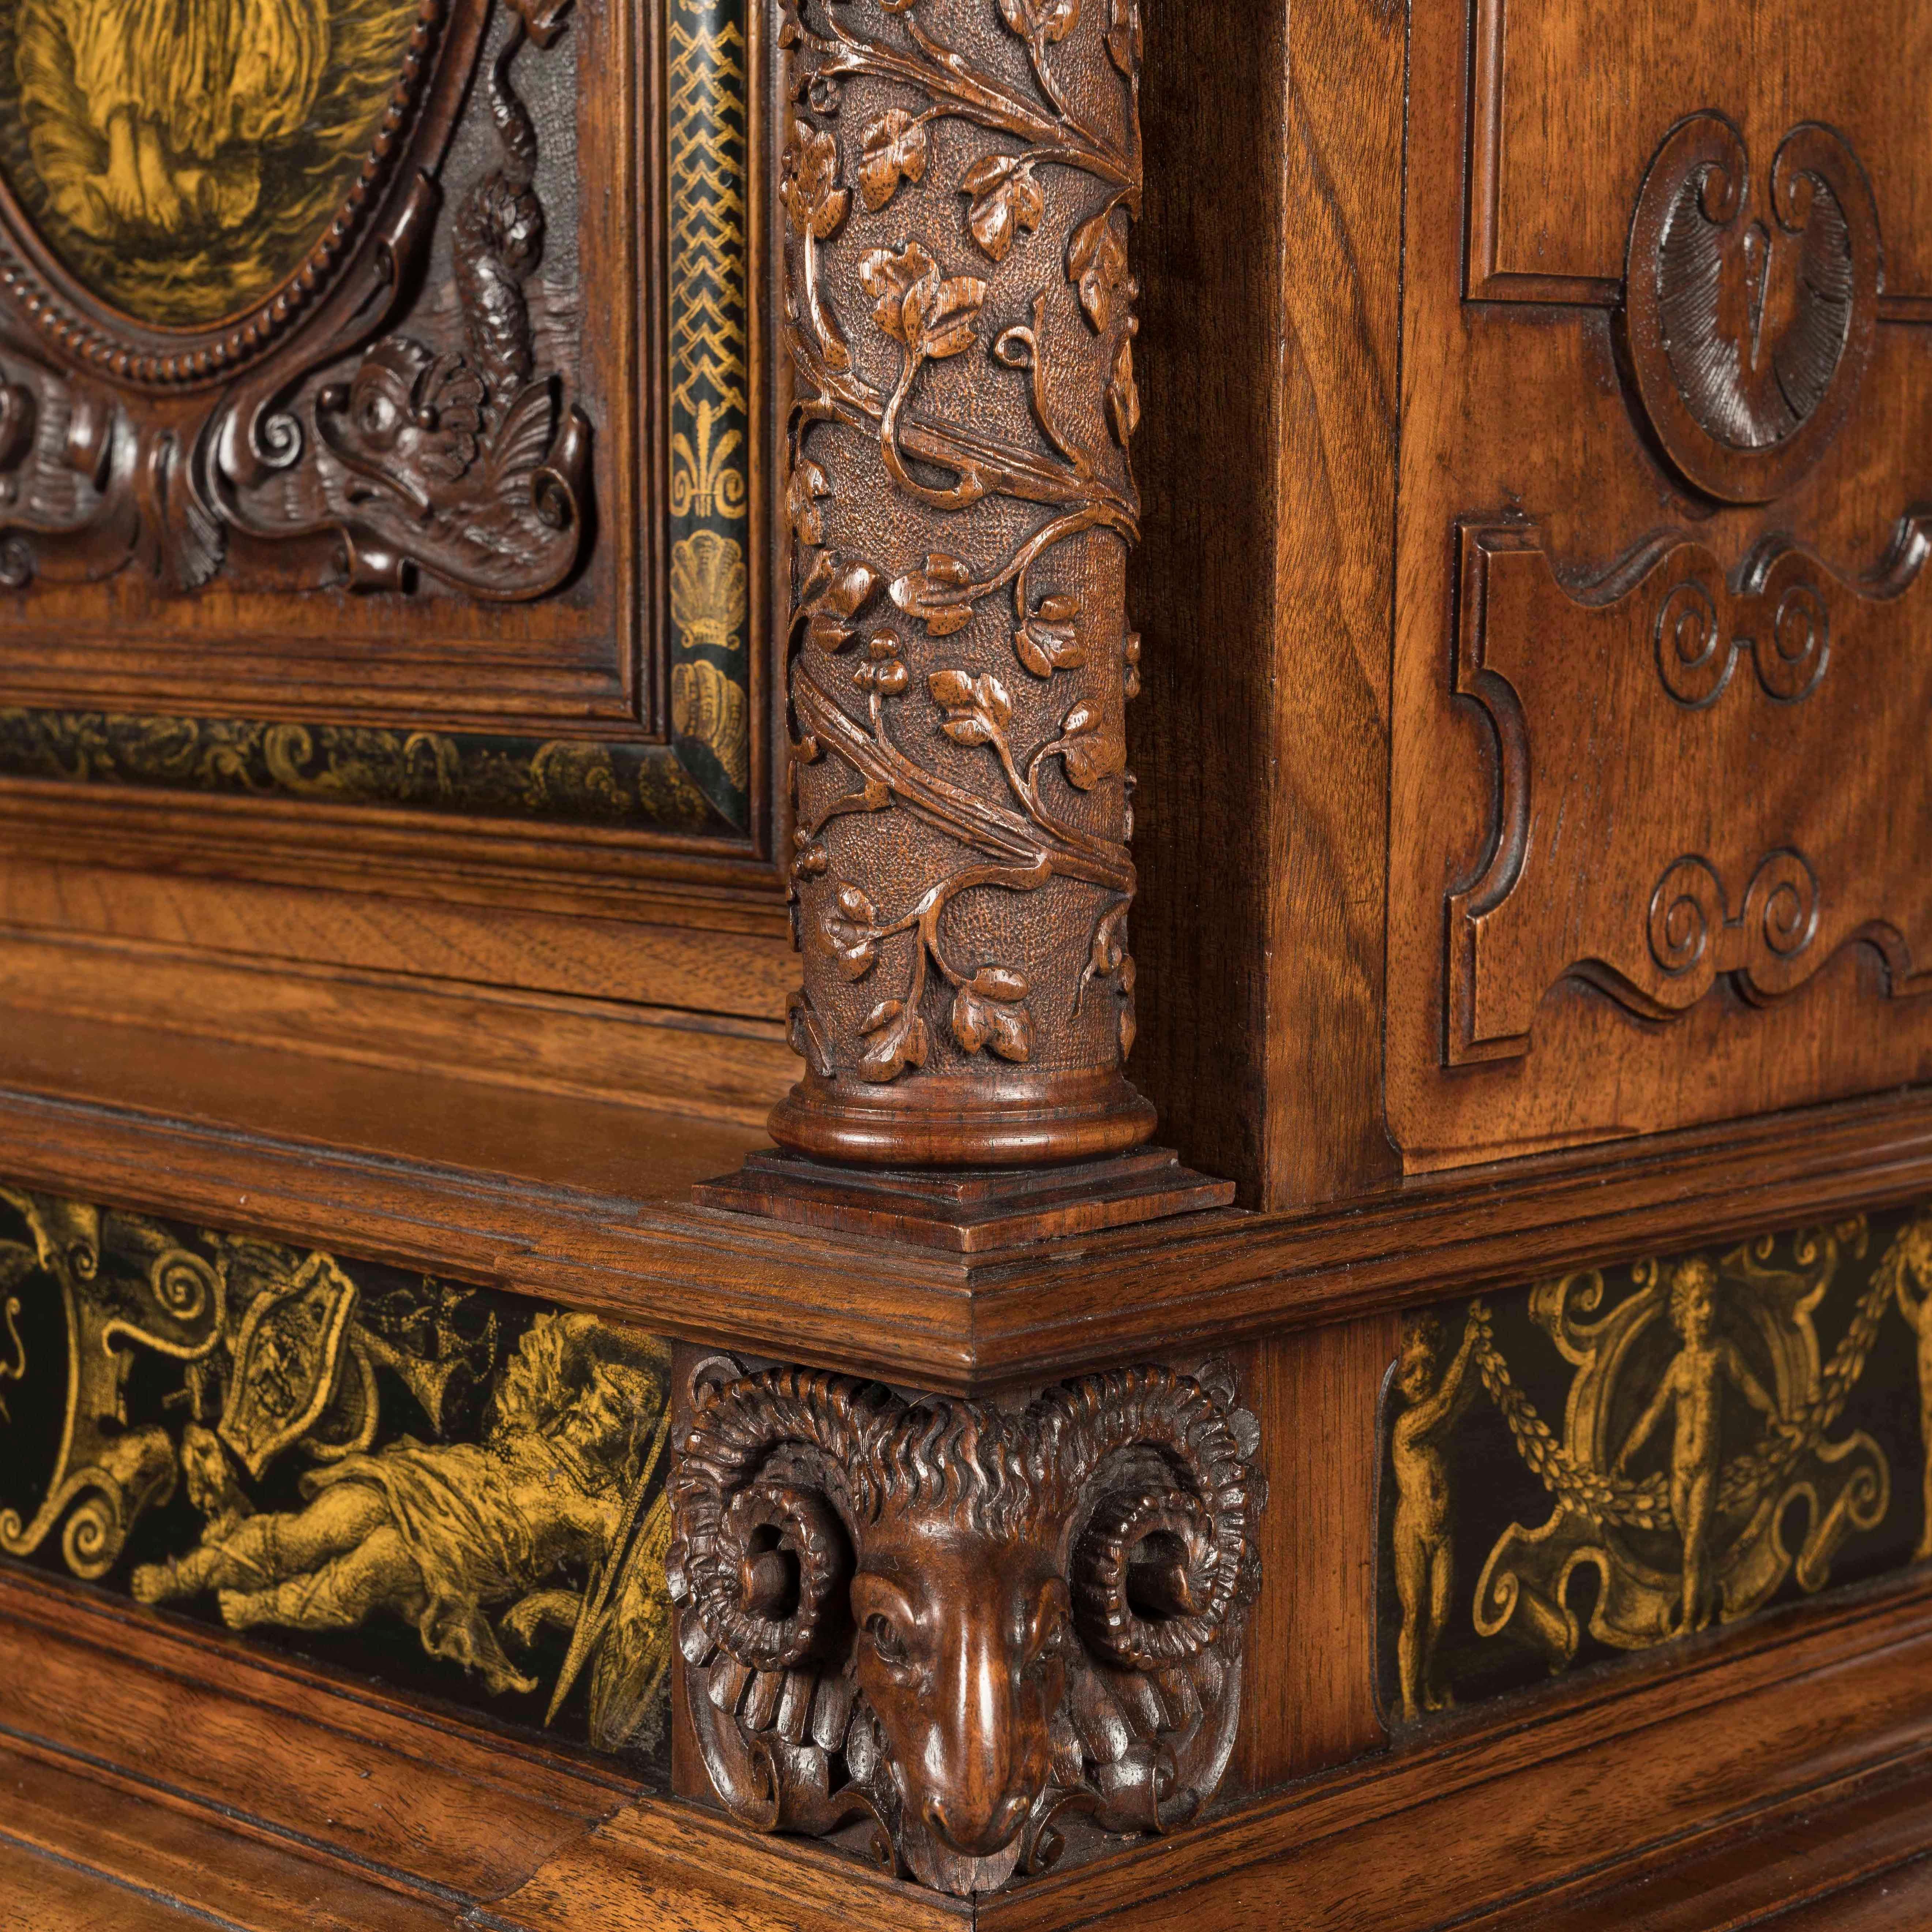 Cabinet Gillows à la manière de la Renaissance

Construite en noyer, en partie ébonisée, et ornée de plaques convexes peintes en grisaille ; reposant sur des pieds en chignon oblongs, elle présente une étagère inférieure de forme, avec une plaque